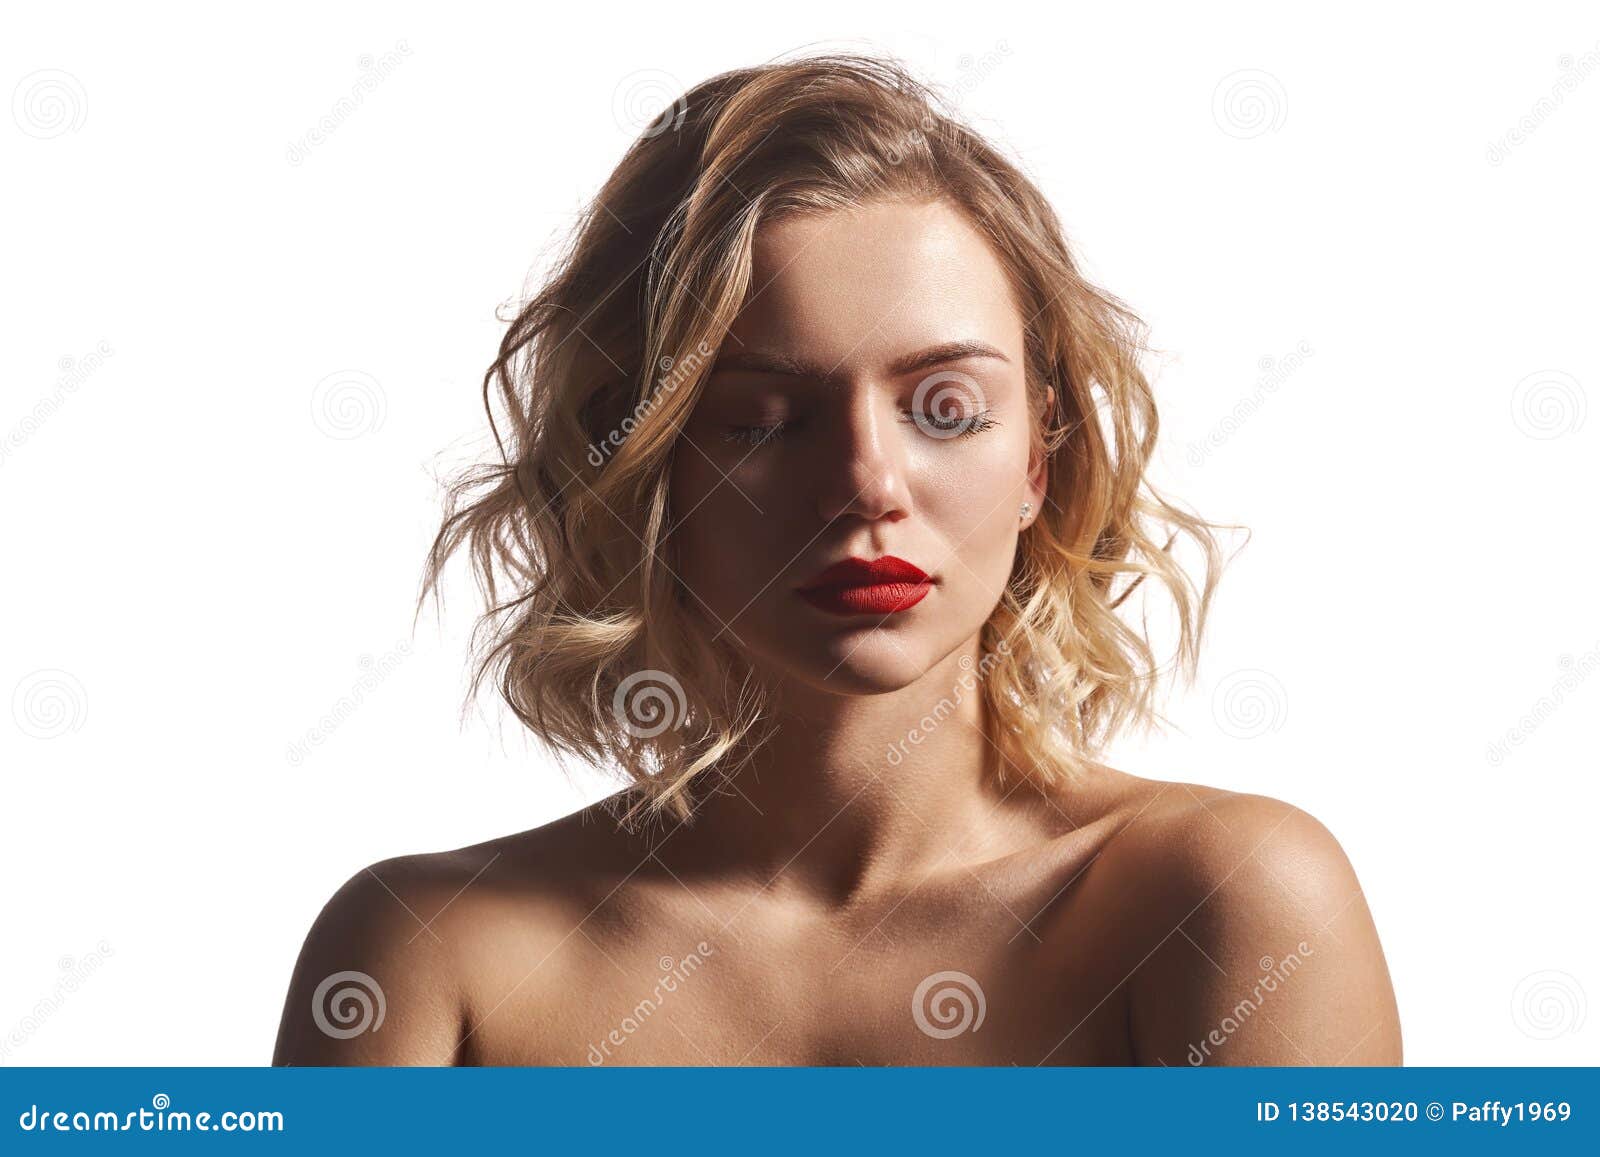 年轻性感的赤裸深色的女性正面图 库存图片. 图片 包括有 确信, 仔细, 皮肤, 样式, 肩膀, 干净 - 146104663